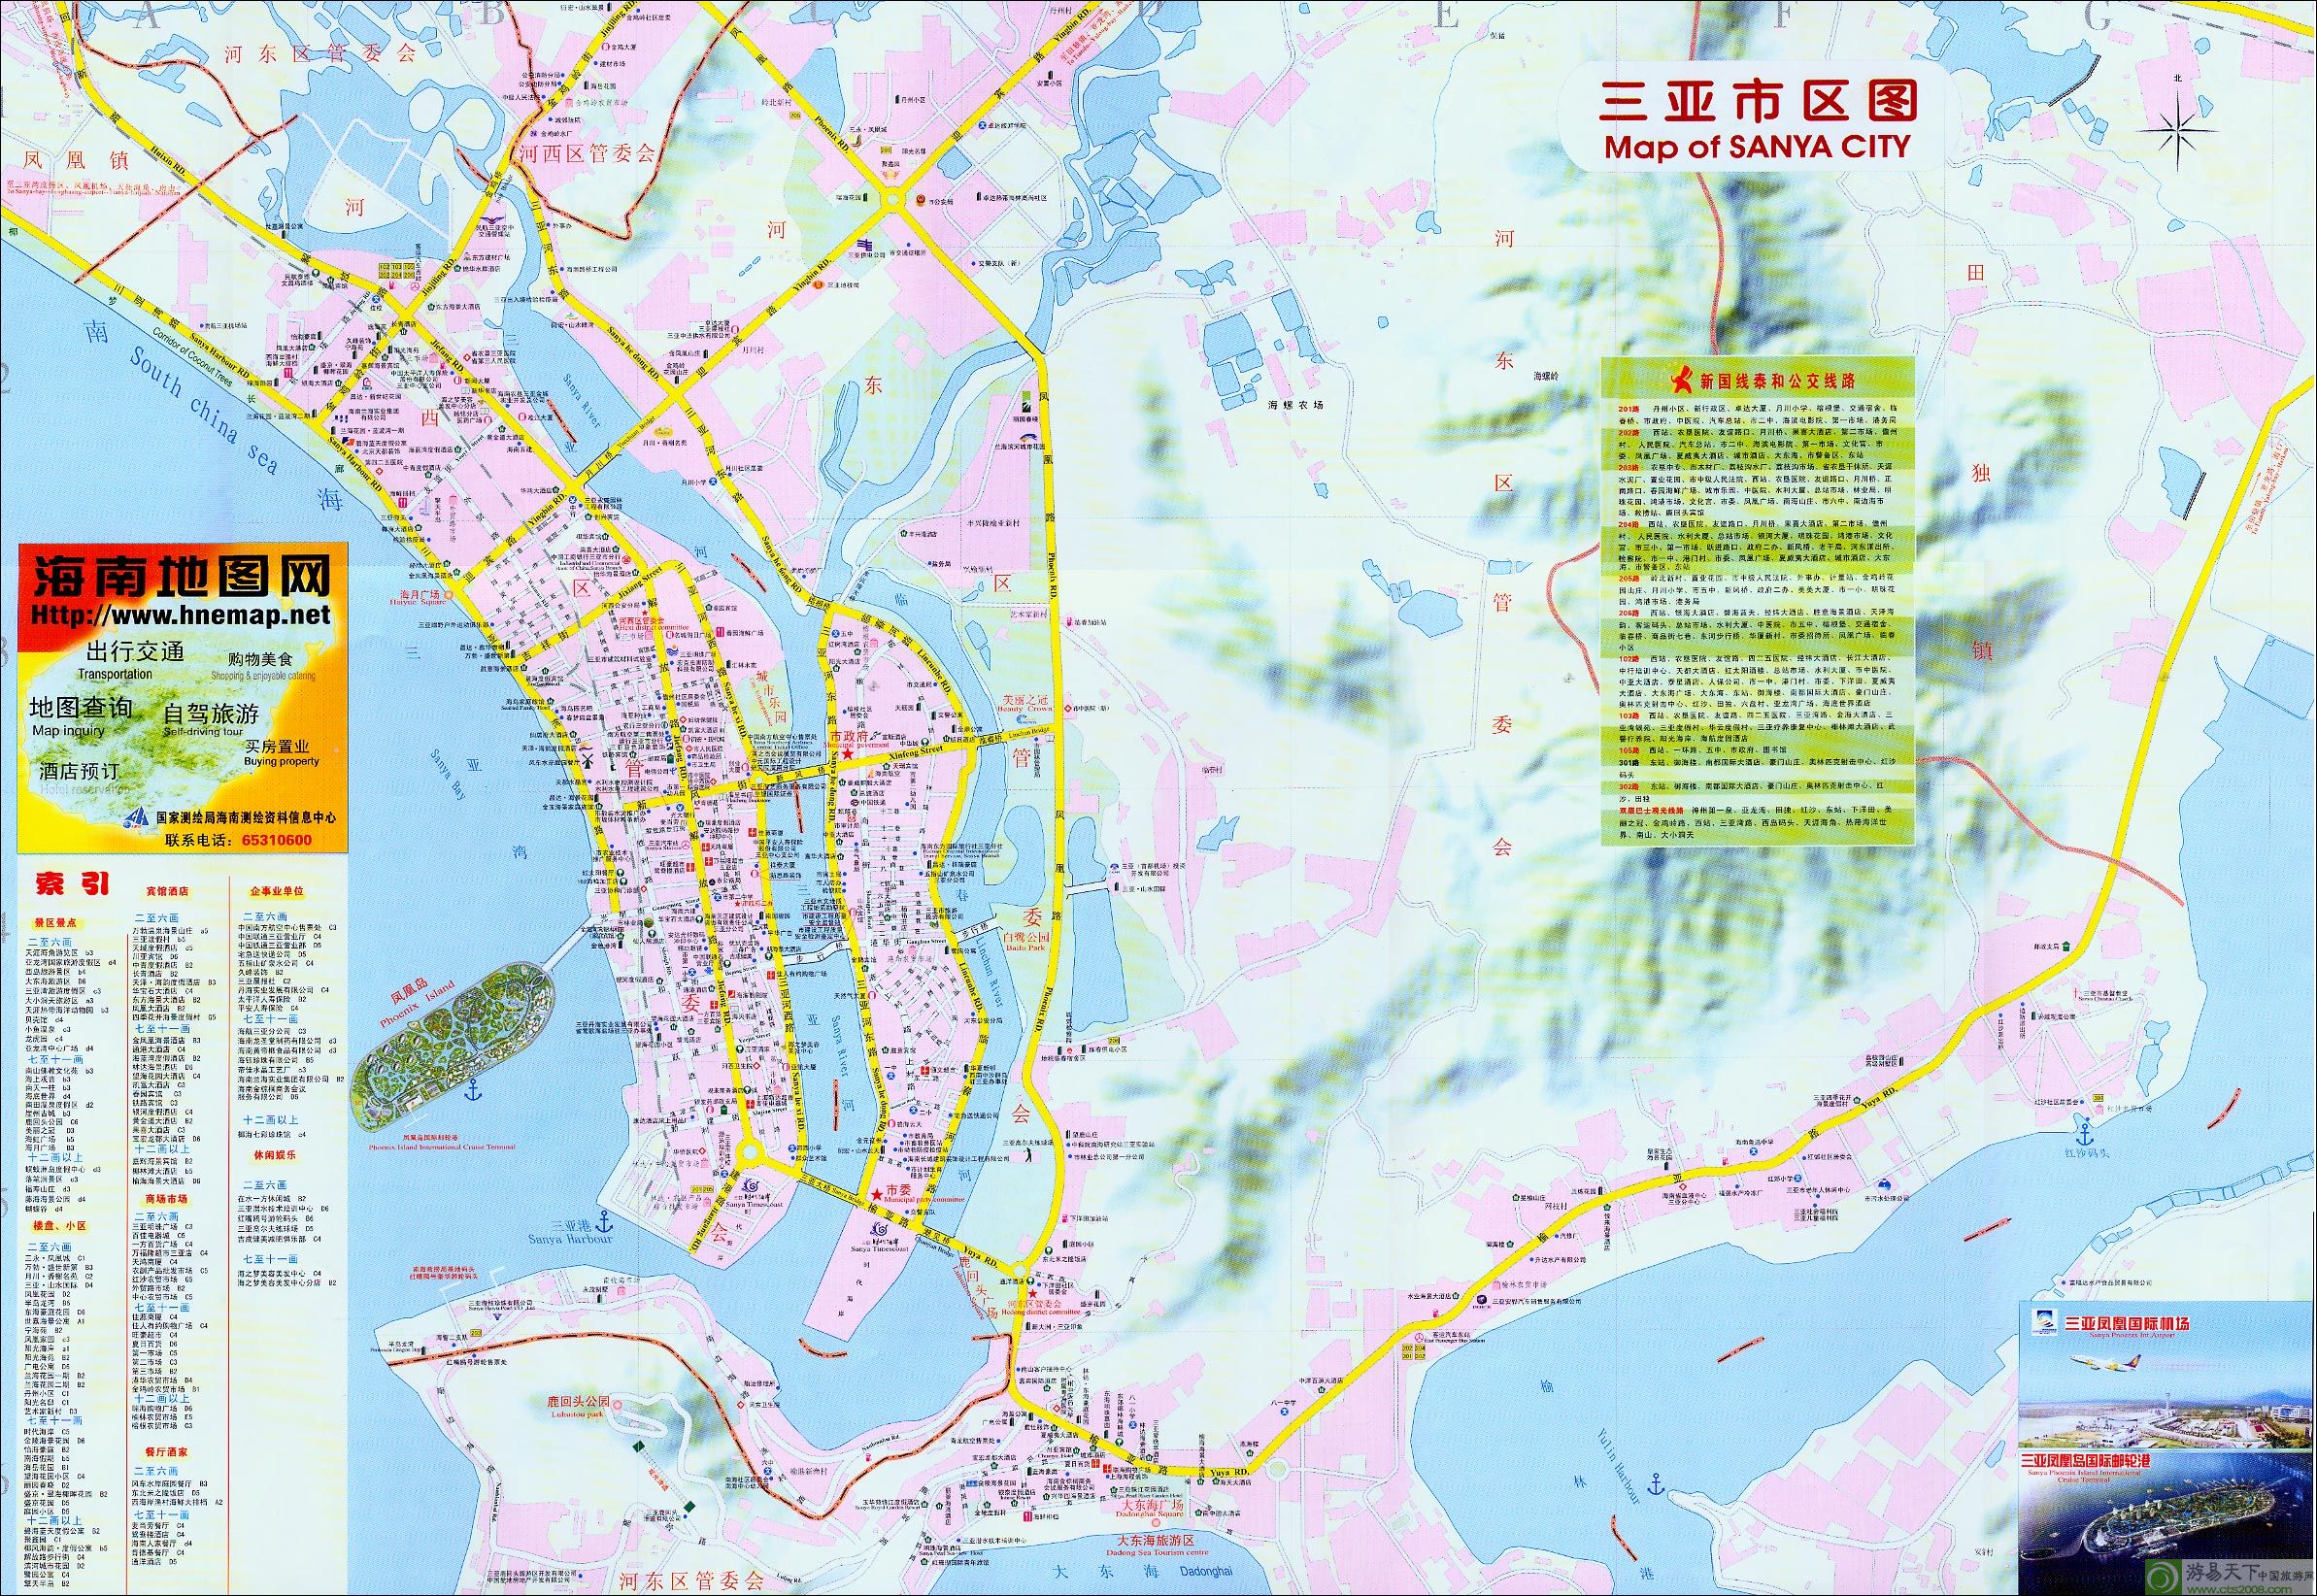 三亚 |  下一张地图: 三亚市三维地图(超大)图片